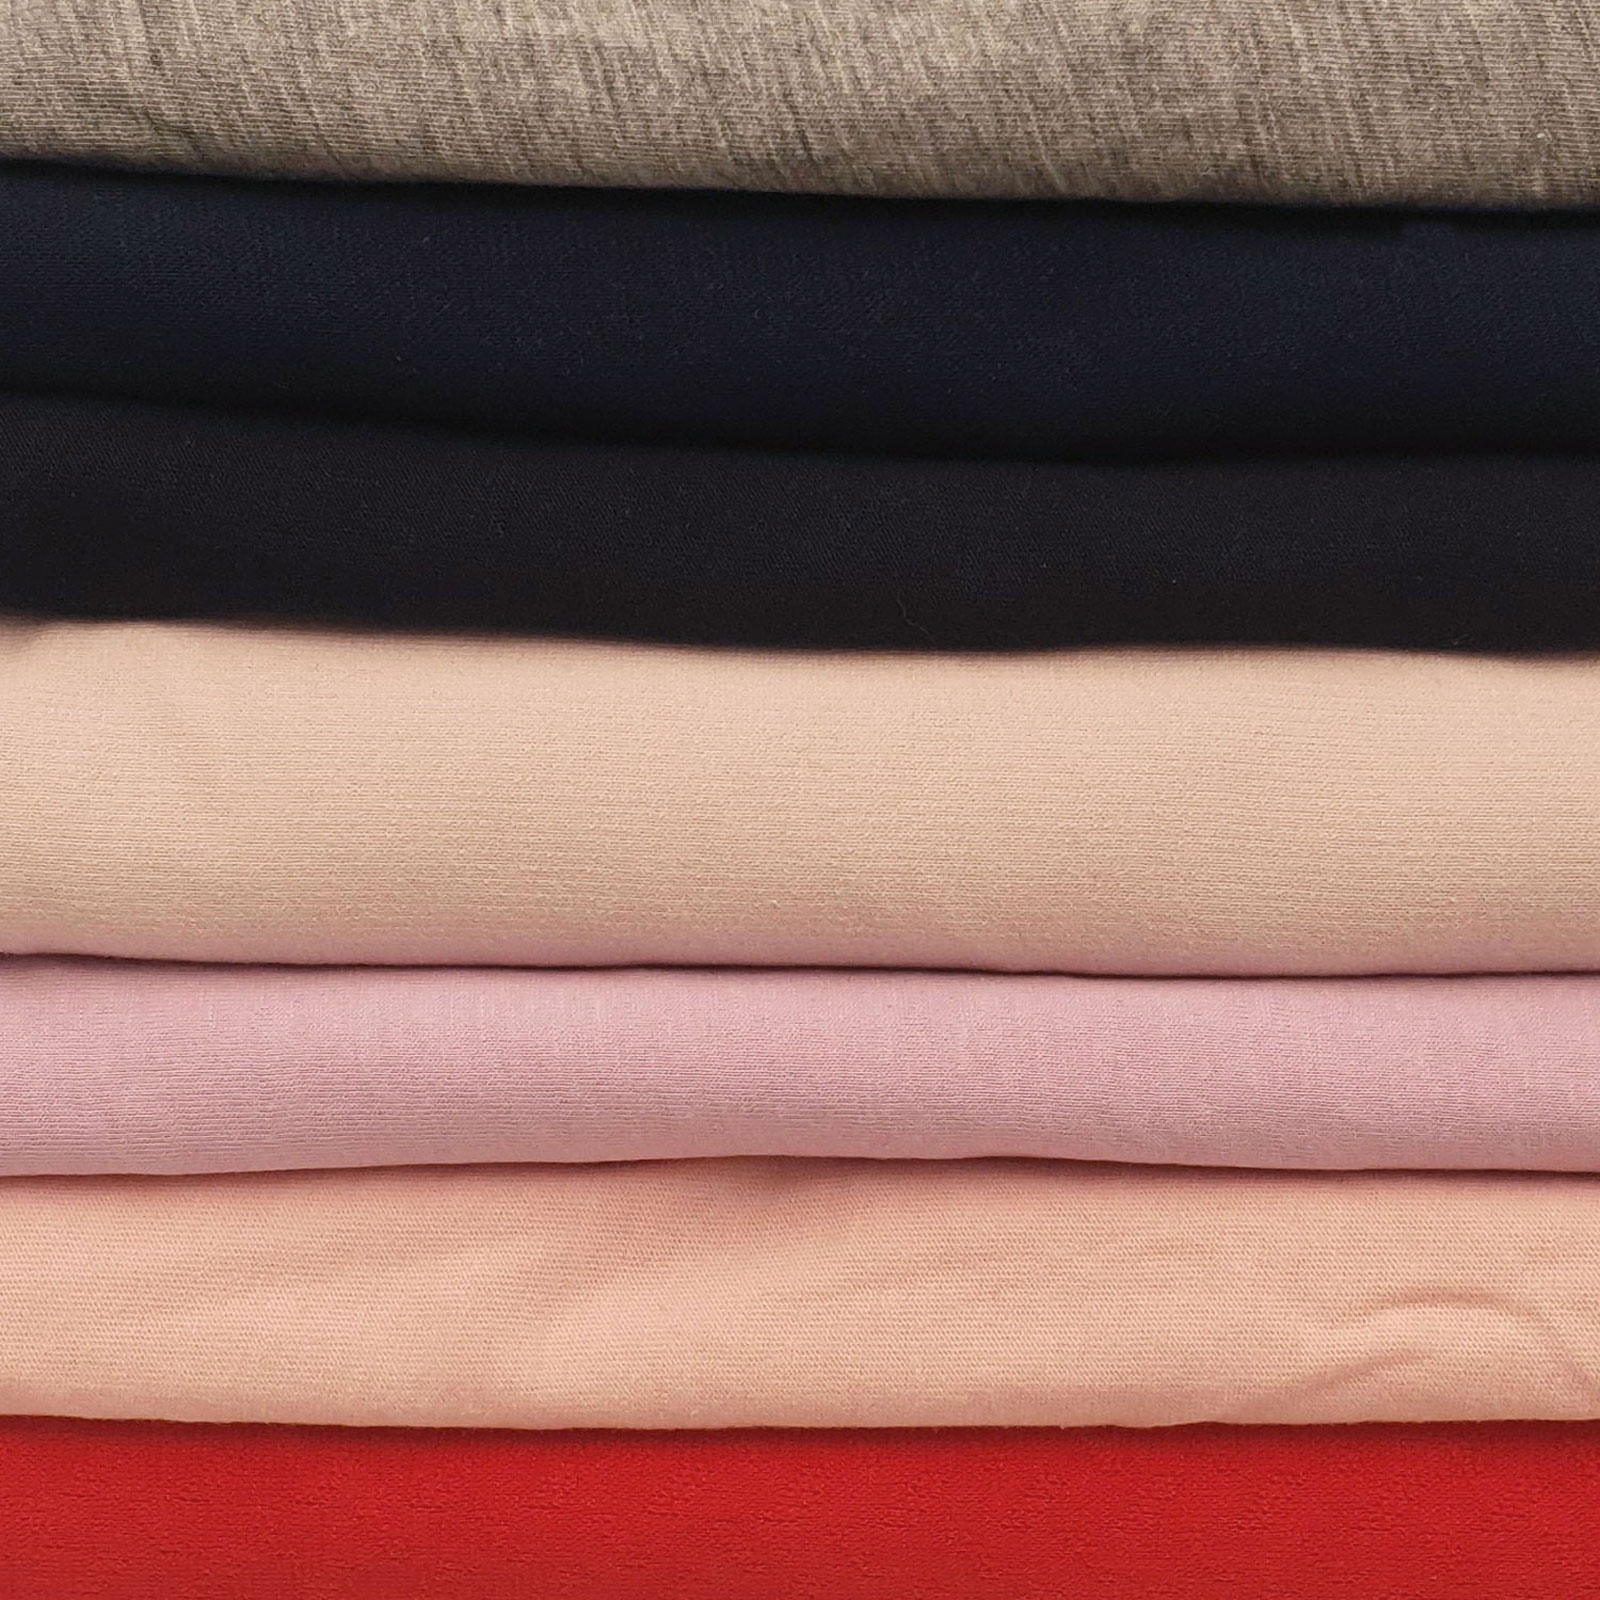 Caixa surpresa "Ben" – algodão jersey – 10m